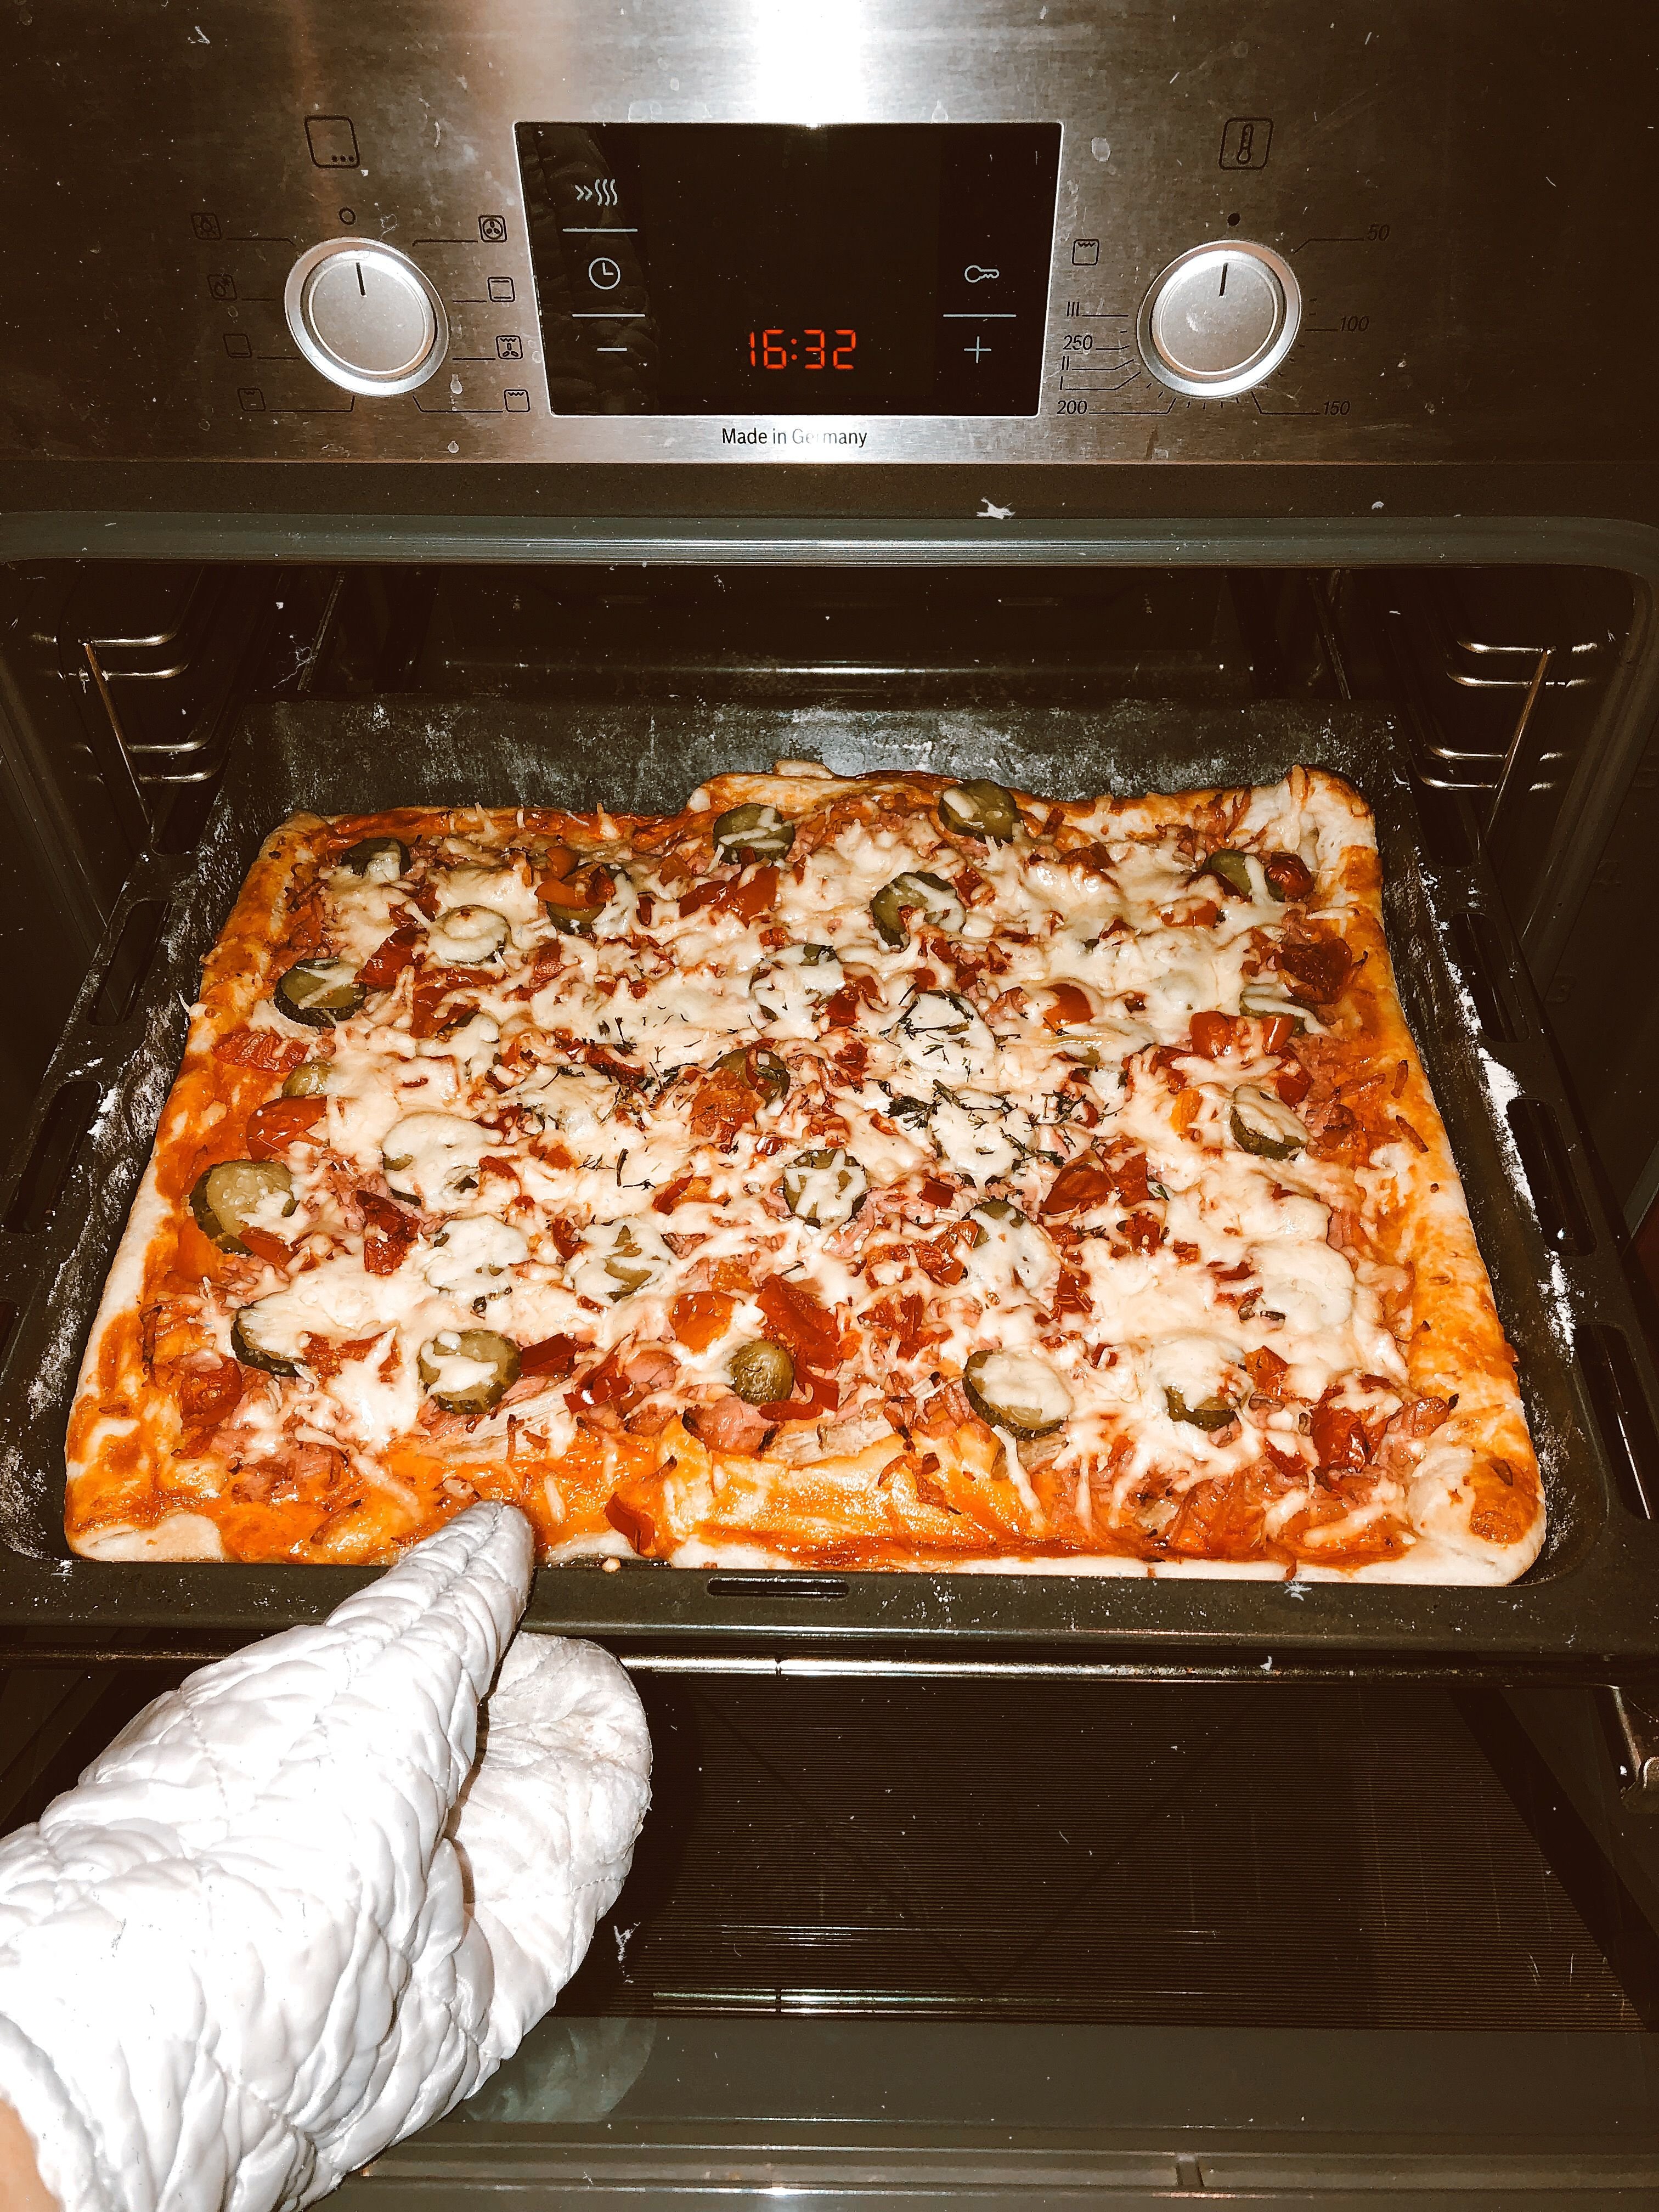 ютуб рецепт пиццы в духовке в домашних условиях фото 82